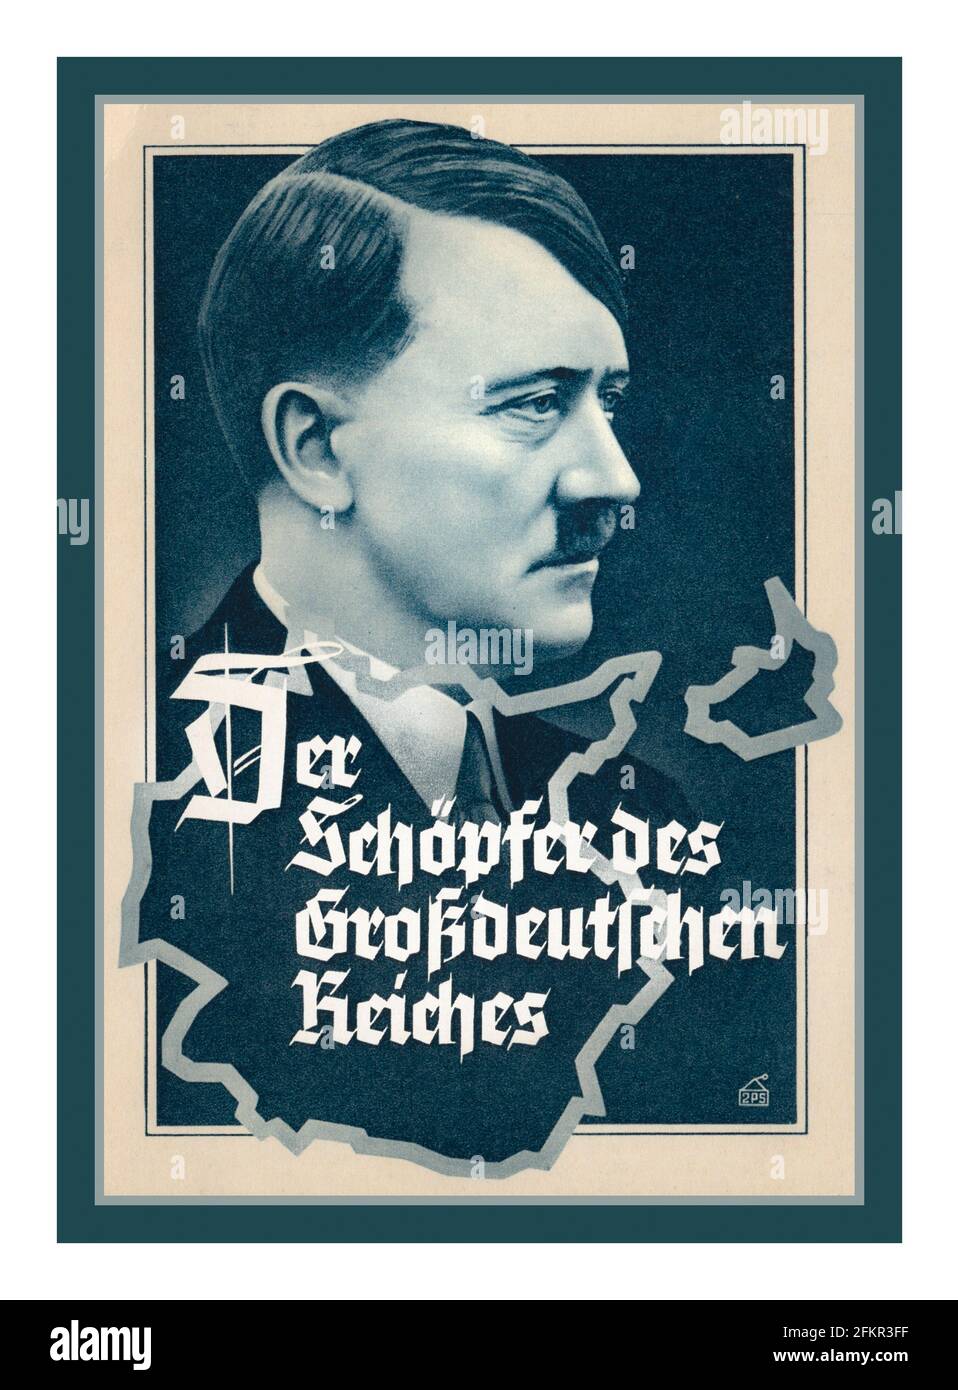 Vintage Adolf Hitler Poster card 'Adolf Hitler Der Schöpfer des Grossdeutschen Reiches'  Adolf Hitler The creator of the Greater German Reich 1930's Nazi Germany Stock Photo